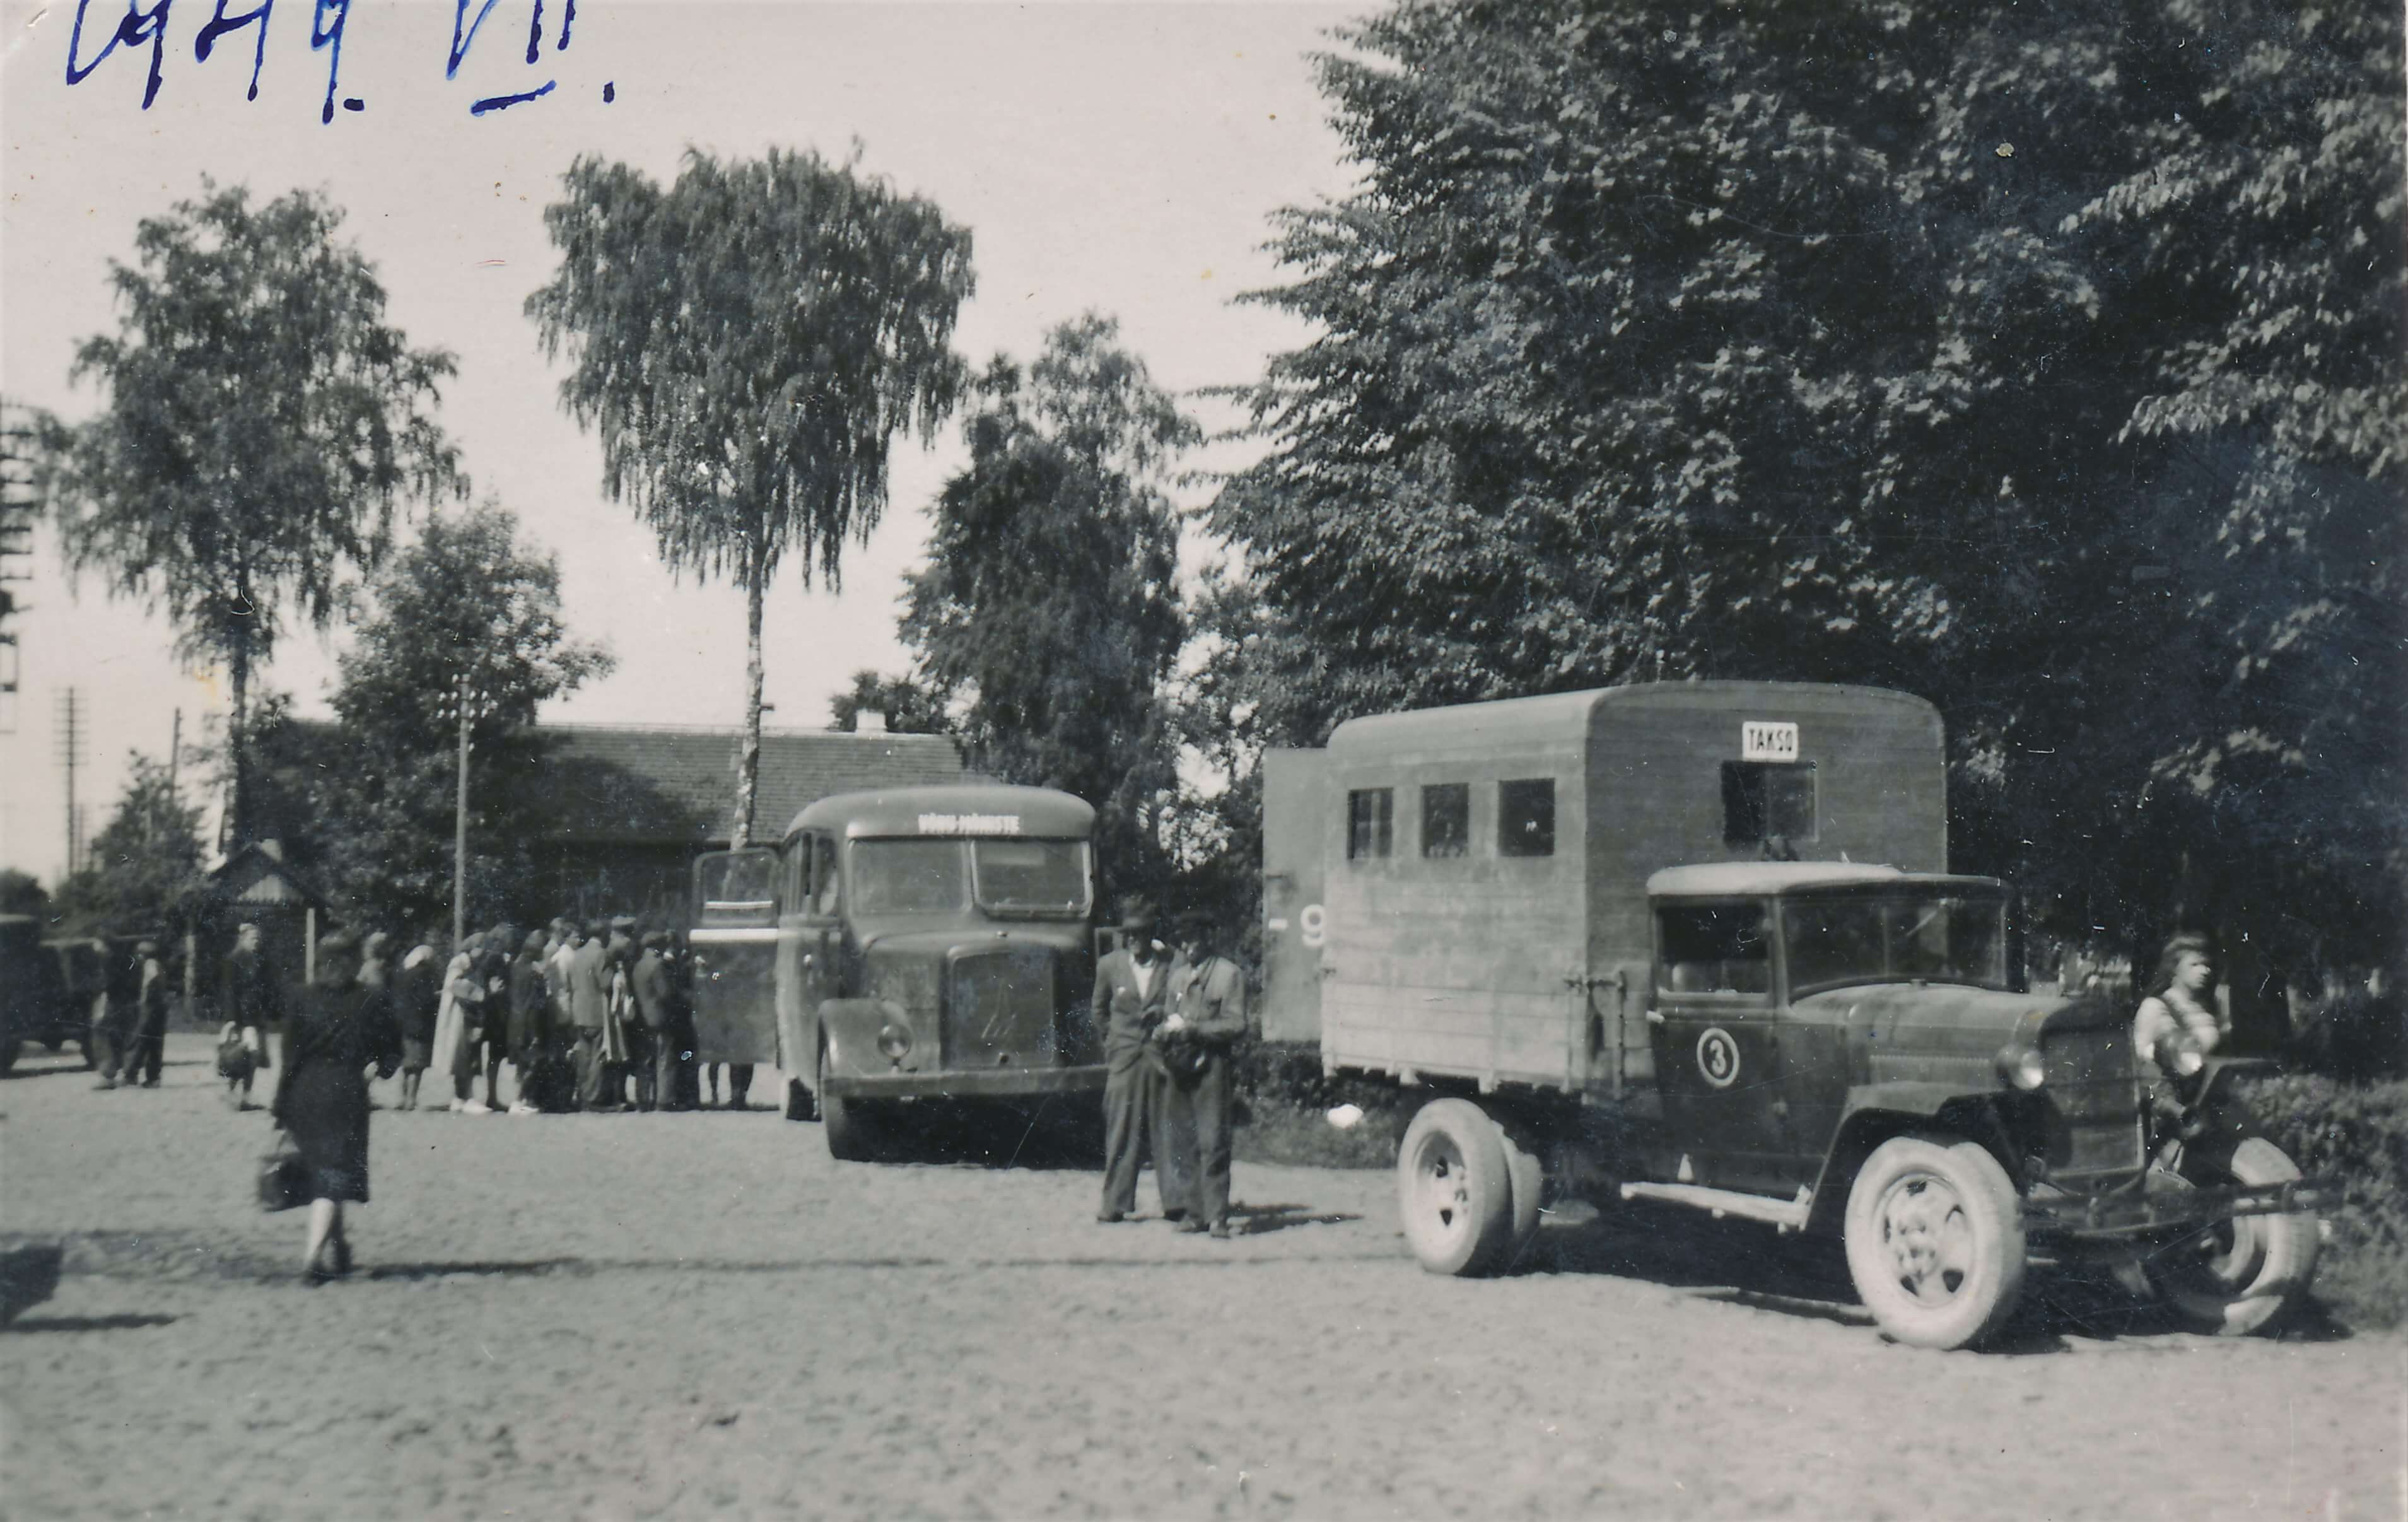 Rahvas vajab ühistransporti! Ühissõidukite puudujäägi likvideerimiseks kasutati sõjajärgsetel aastatel trofeebusse ja veoautosid, ehitades reisijate jaoks nende raamile puidust konge. Fotol on 1949. aastal Võrumaal kasutusel olnud veoautole GAZ-MM ehitatud veotakso ja Võru–Mõniste liinil sõitnud trofeebuss Magirus. Pärast sõja lõppu toodi Eestisse Ida-Preisimaalt sakslastelt sõjasaagiks saadud Magiruse firmas toodetud staabibusse, mille sisustus kohandati reisijateveoks. Foto: Eesti Maanteemuuseum